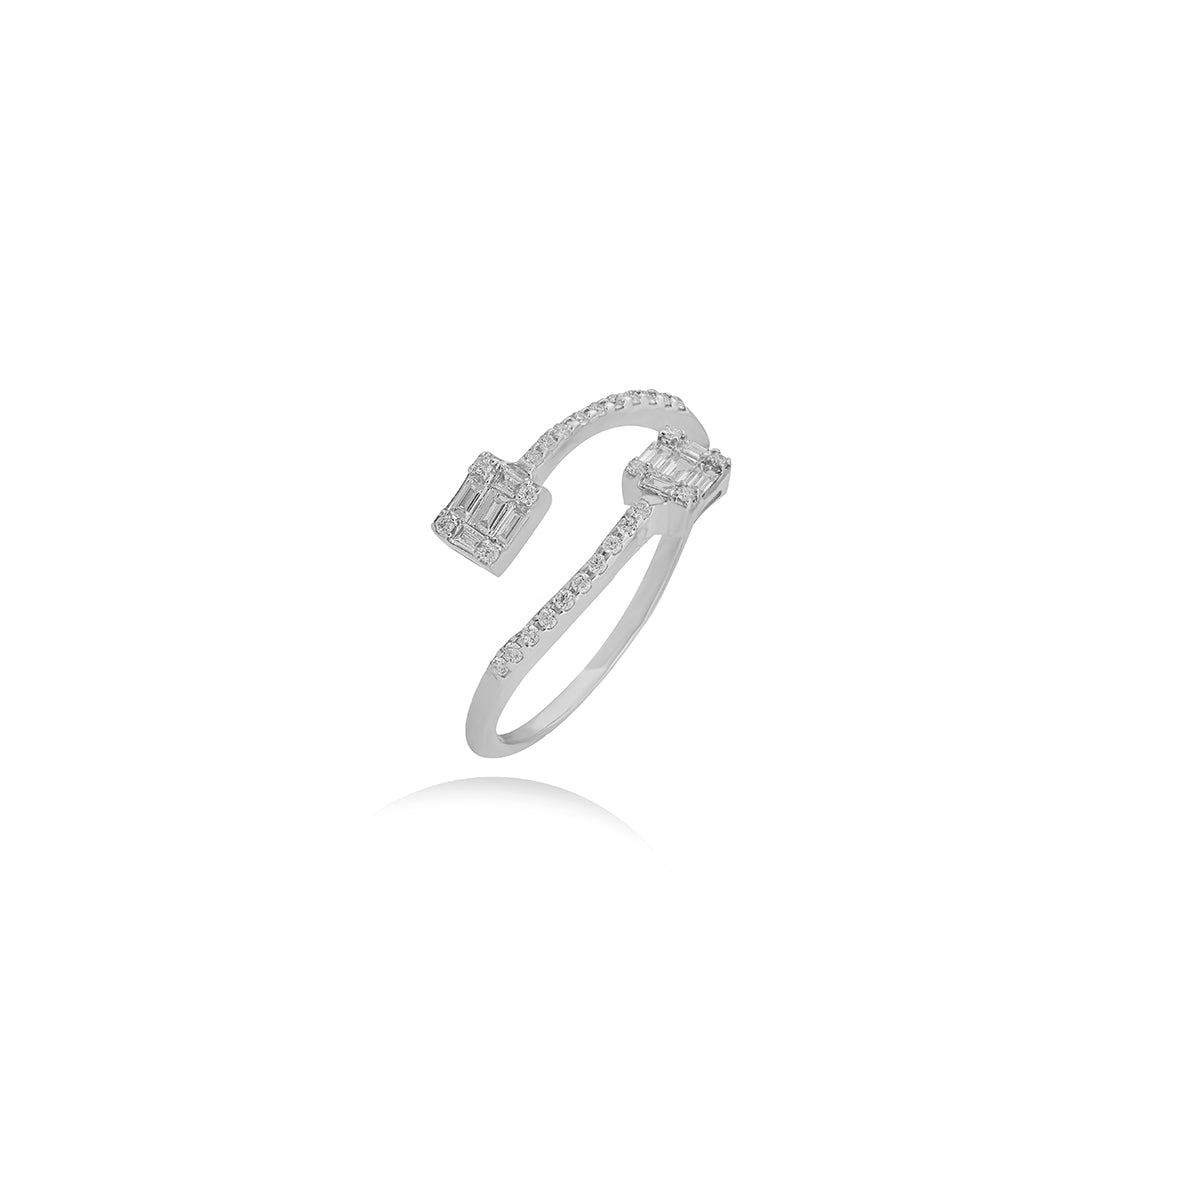 Baguette Diamond Ring In 18k Gold